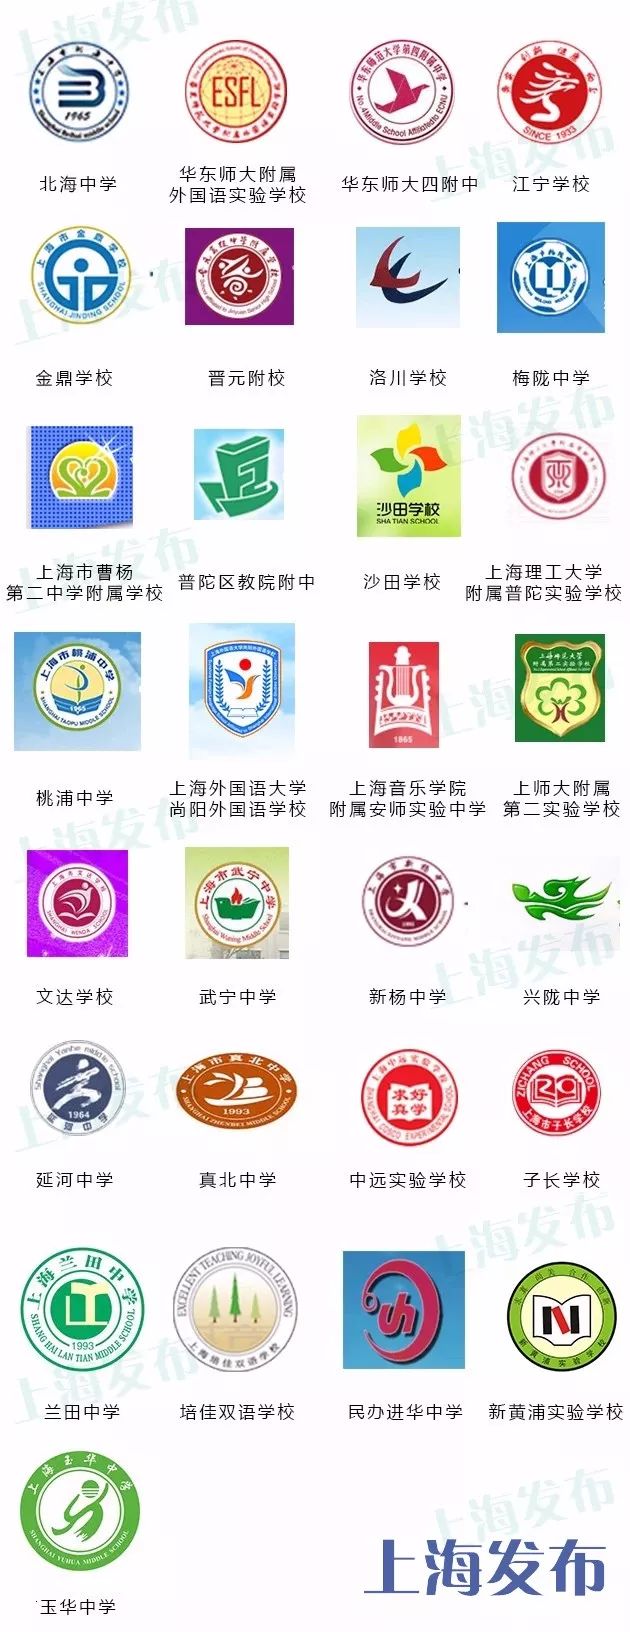 上海383所初中的校徽长啥样,能找到你的母校吗?